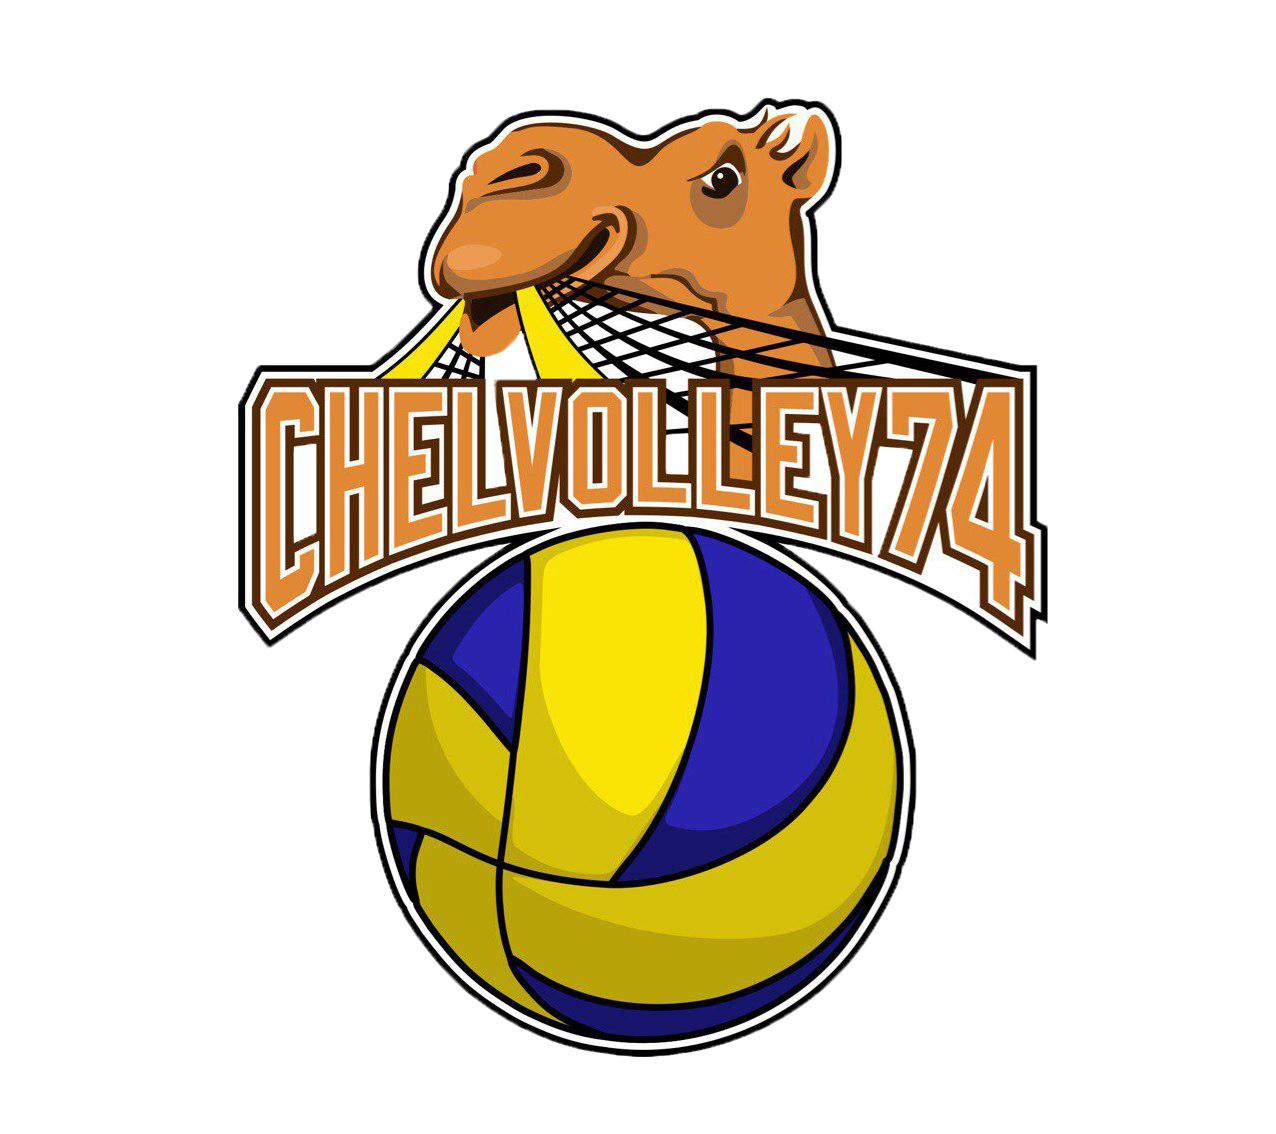  Chelvolley 74, Челябинская обл. логотип